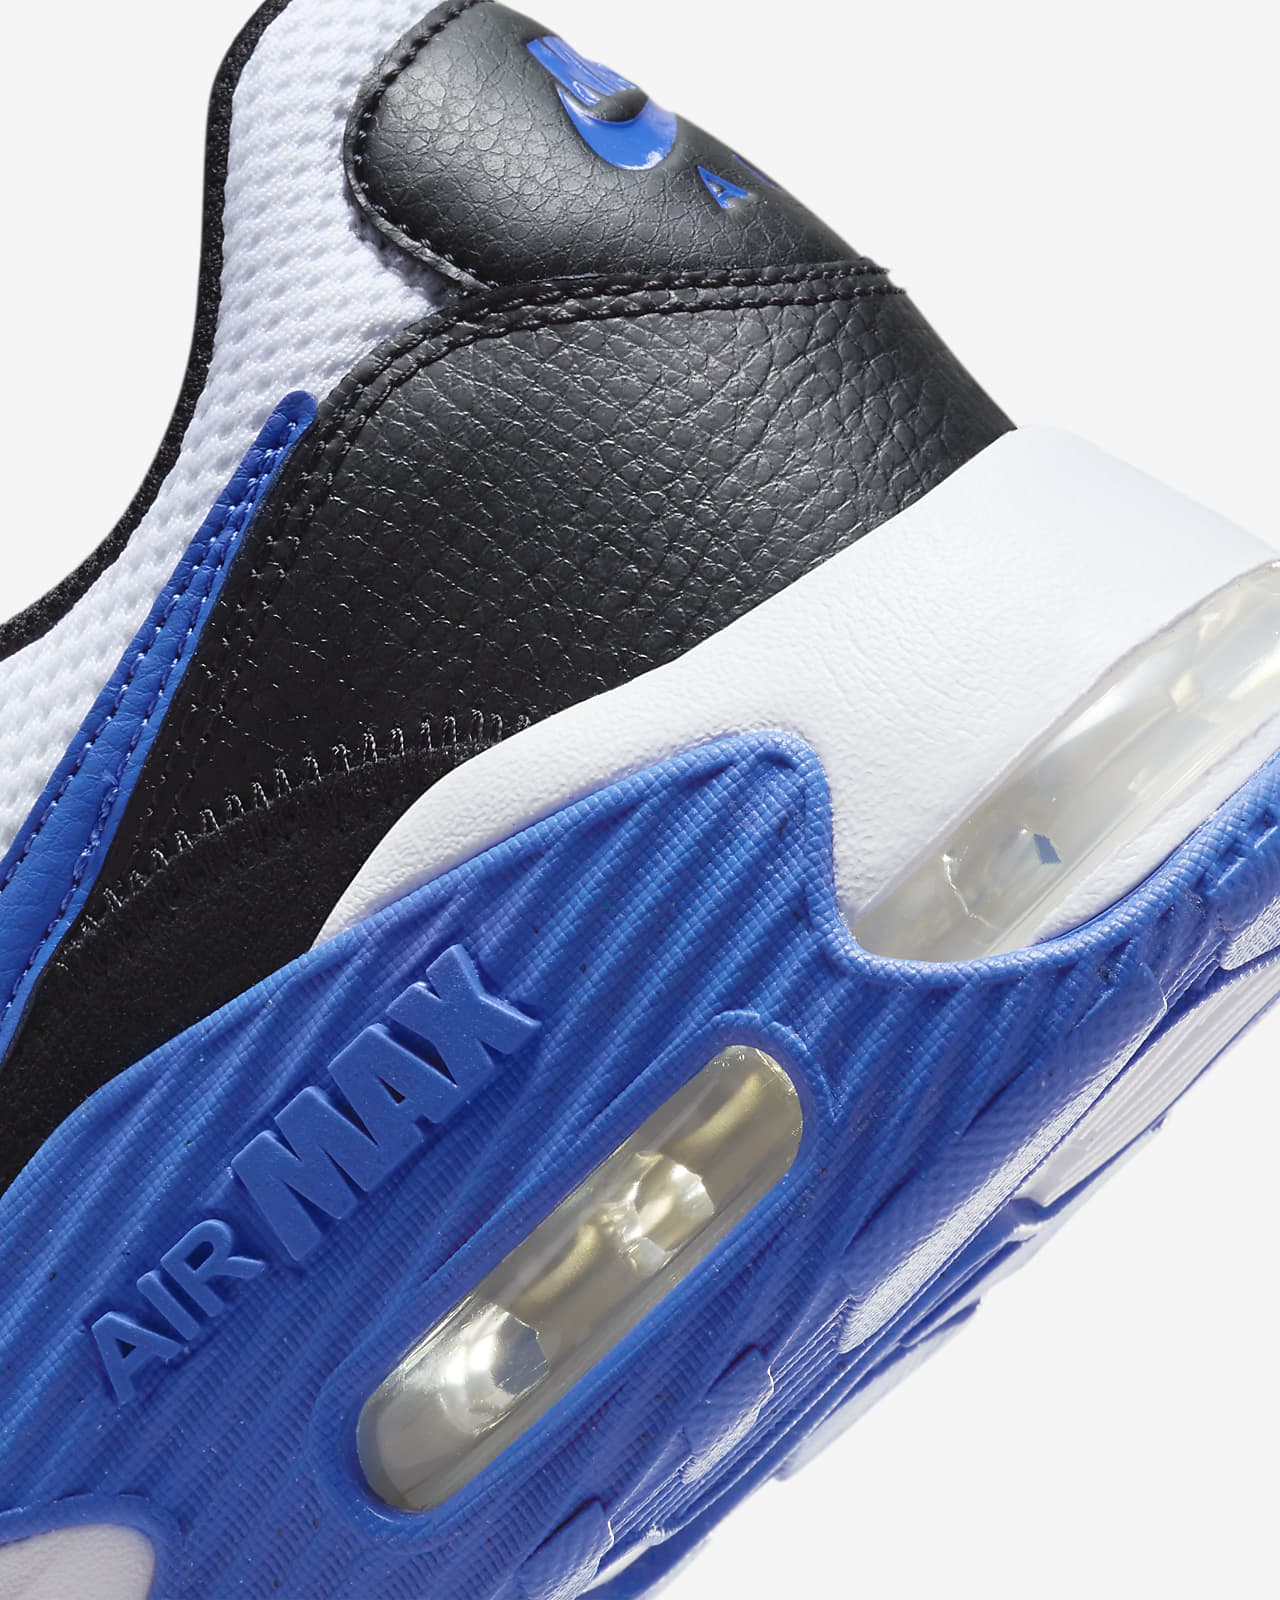 Nike Air Max 90 'Bred' Sneakers | Black | Men's Size 12.5